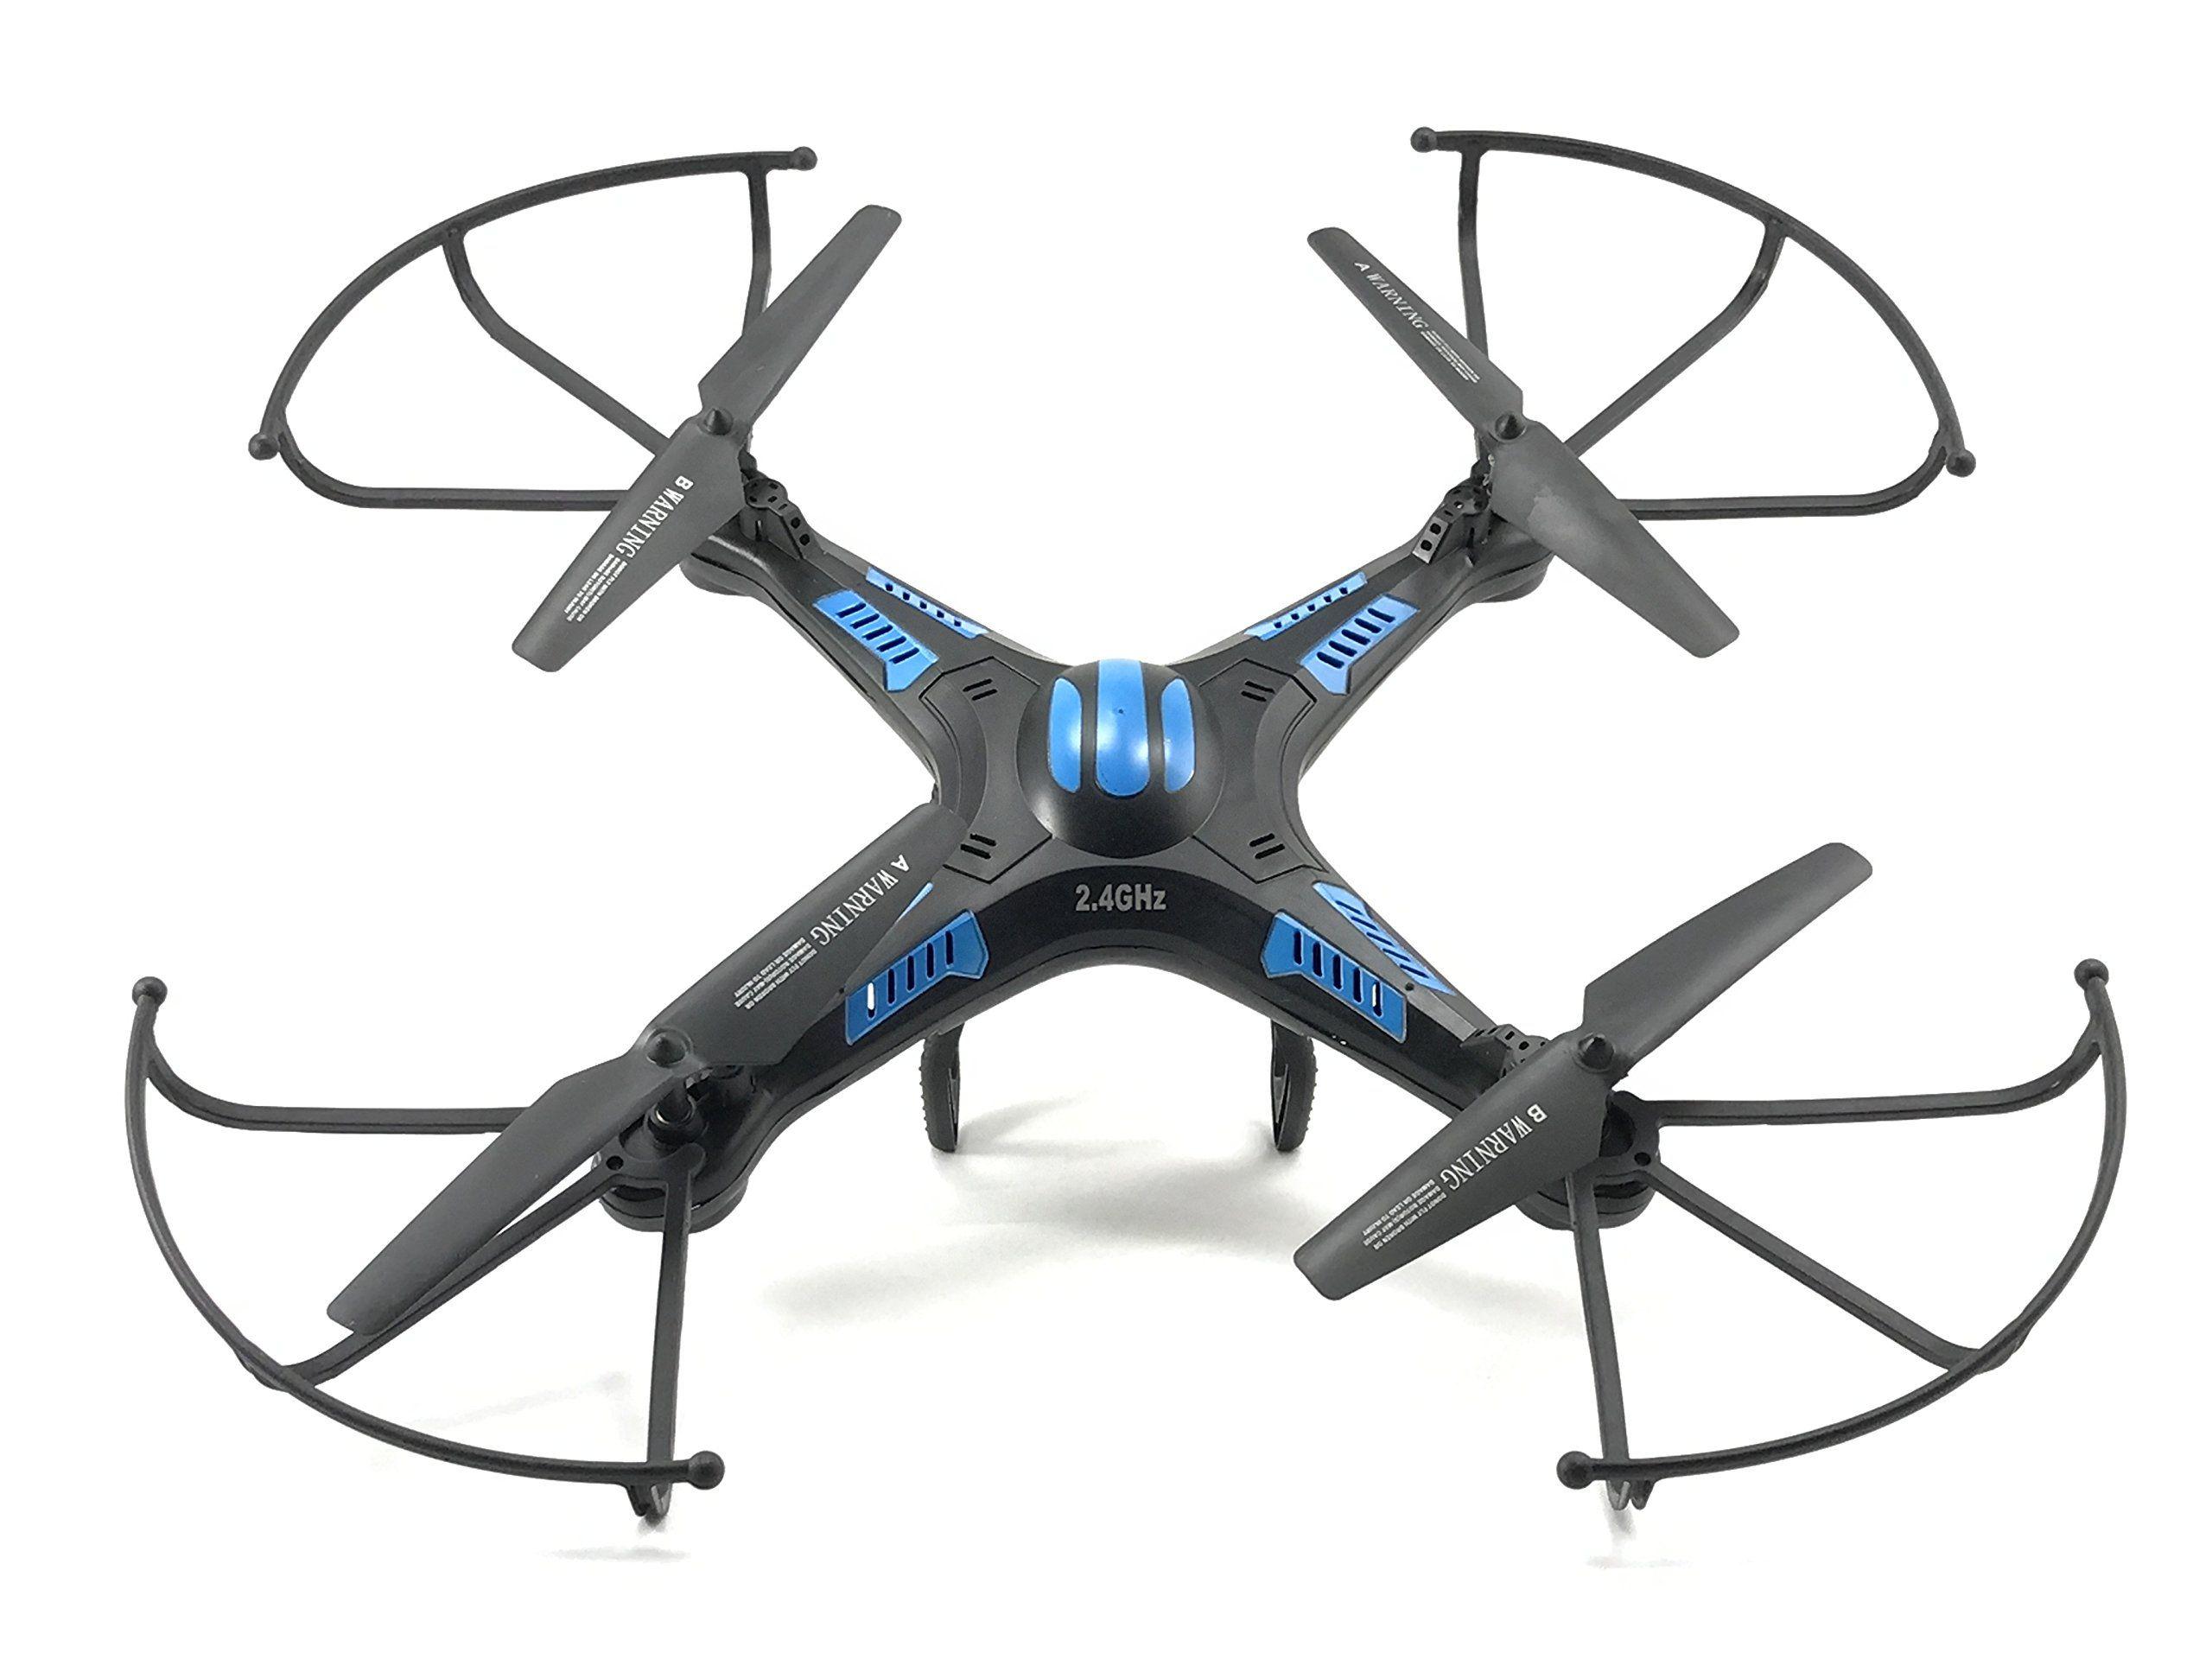 Kingco Quadcopter Vision Drone: Impressive Features of the Kingco Quadcopter Vision Drone for Beginners